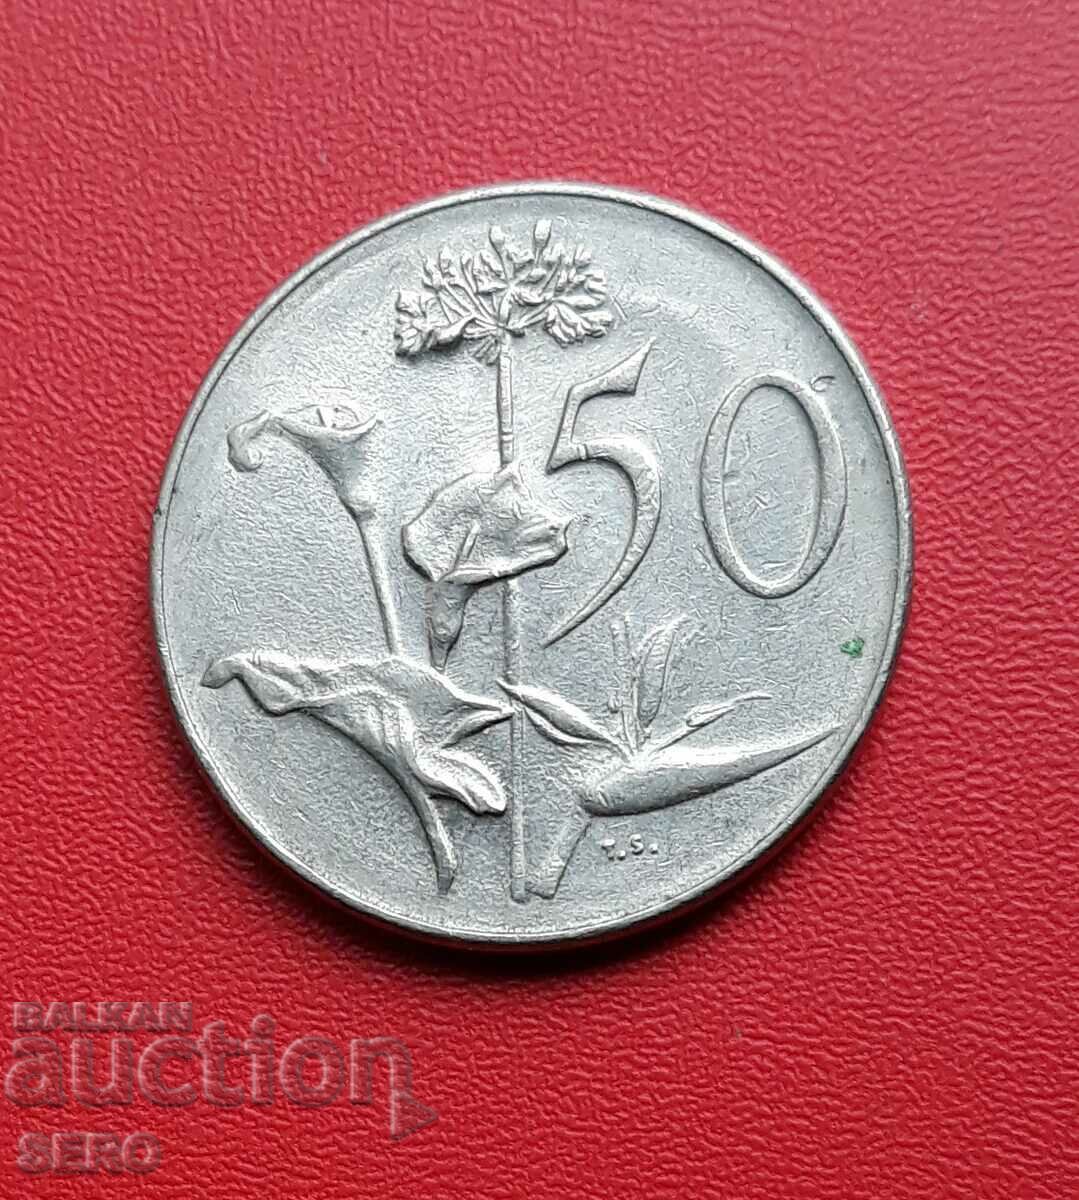 Южна Африка-50 цента 1966